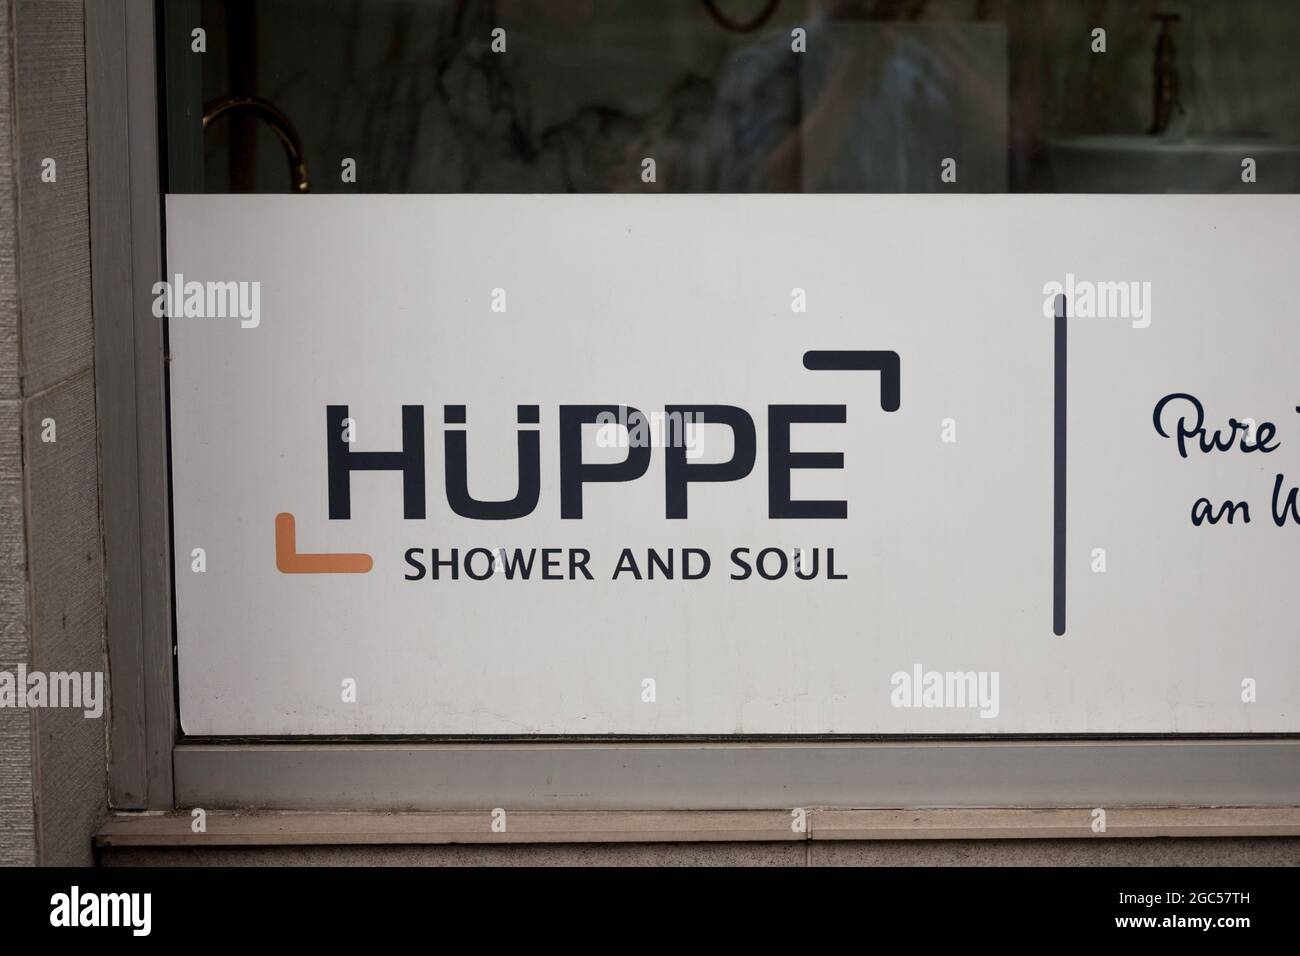 Imagen de un cartel con el logotipo de Huppe en su distribuidor principal en Belgrado, Serbia. Huepe es un productor alemán de equipos de baño como duchas y. Foto de stock